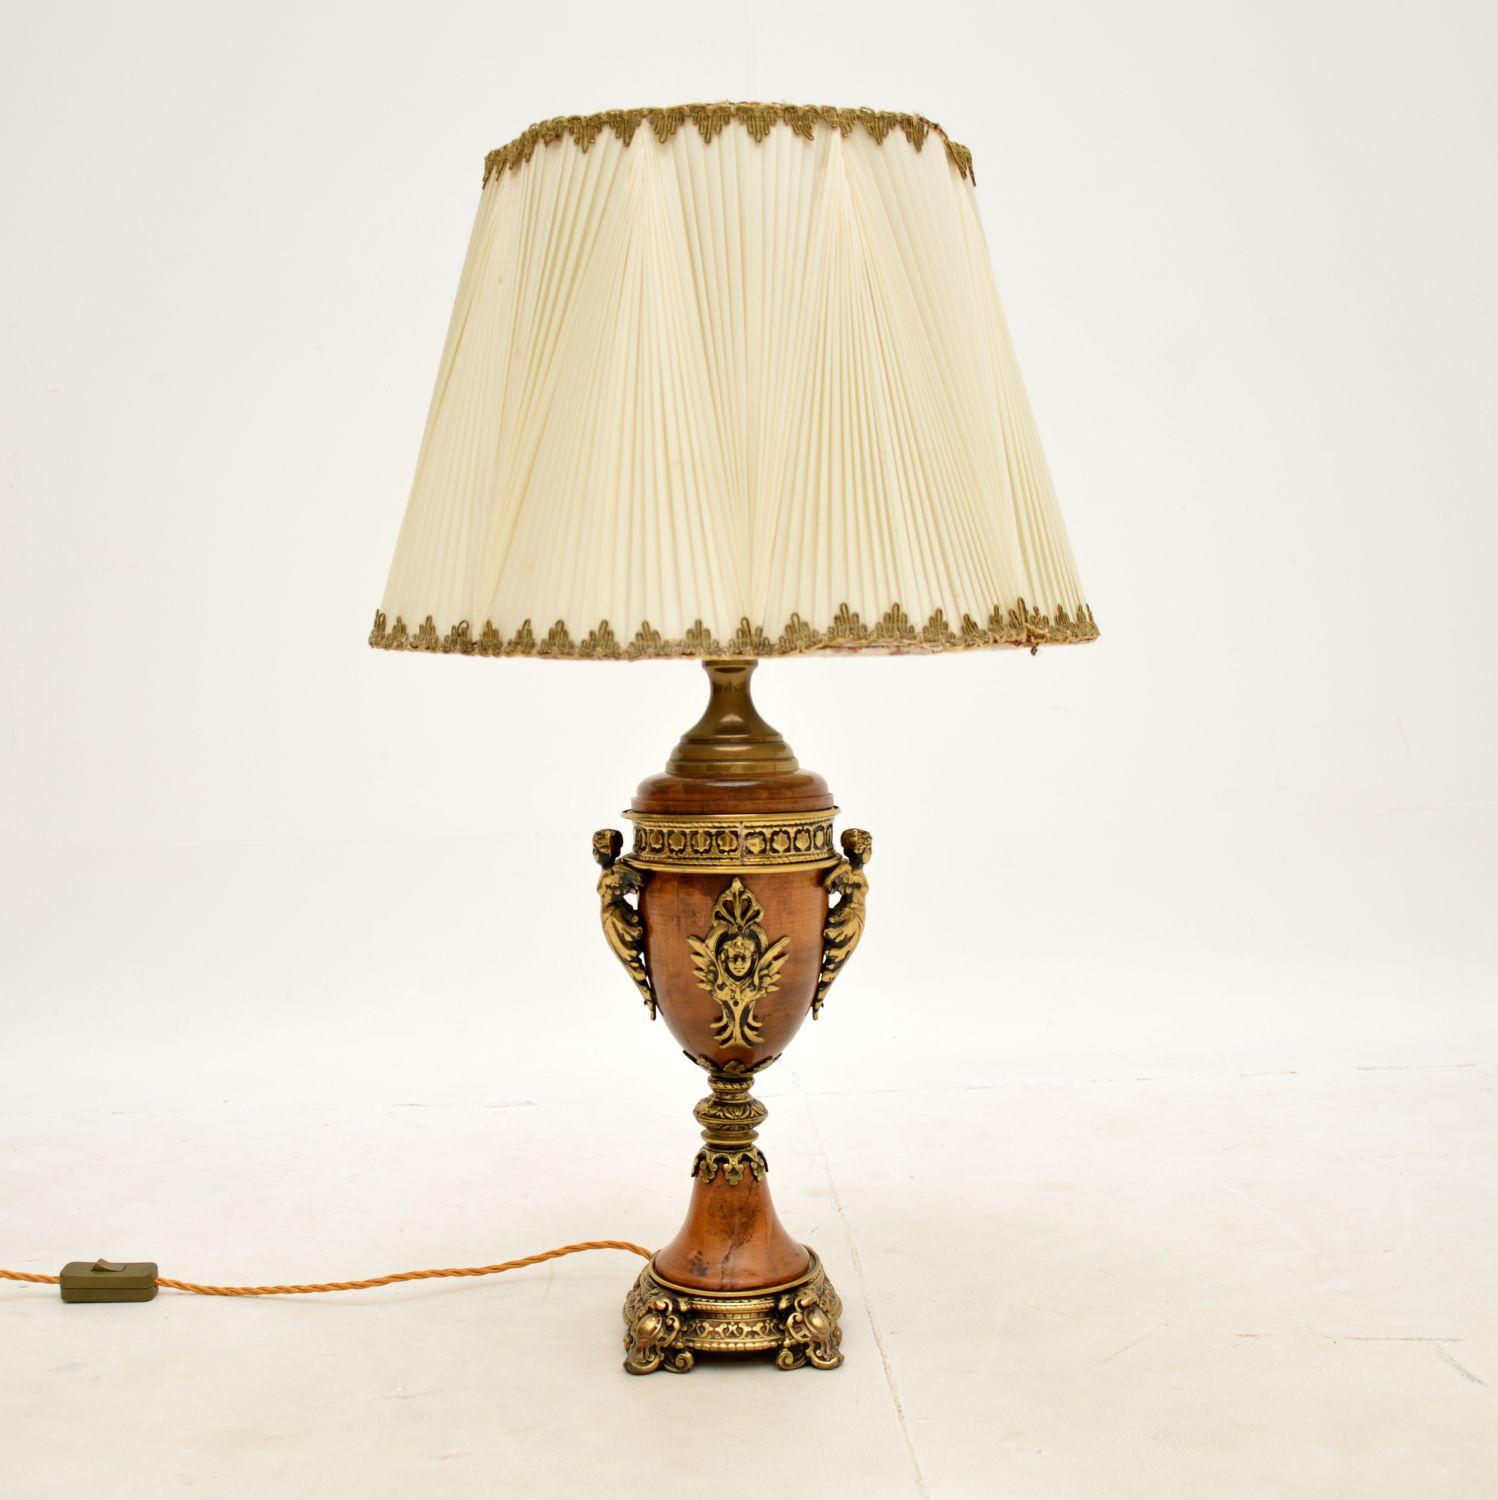 Eine schöne und gut gemachte französische Vintage-Lampe, etwa aus den 1950er Jahren.

Es ist von hervorragender Qualität, mit verzierten vergoldeten Metallbeschlägen, es ist ein großes und beeindruckendes Format.

Der Zustand ist für sein Alter sehr